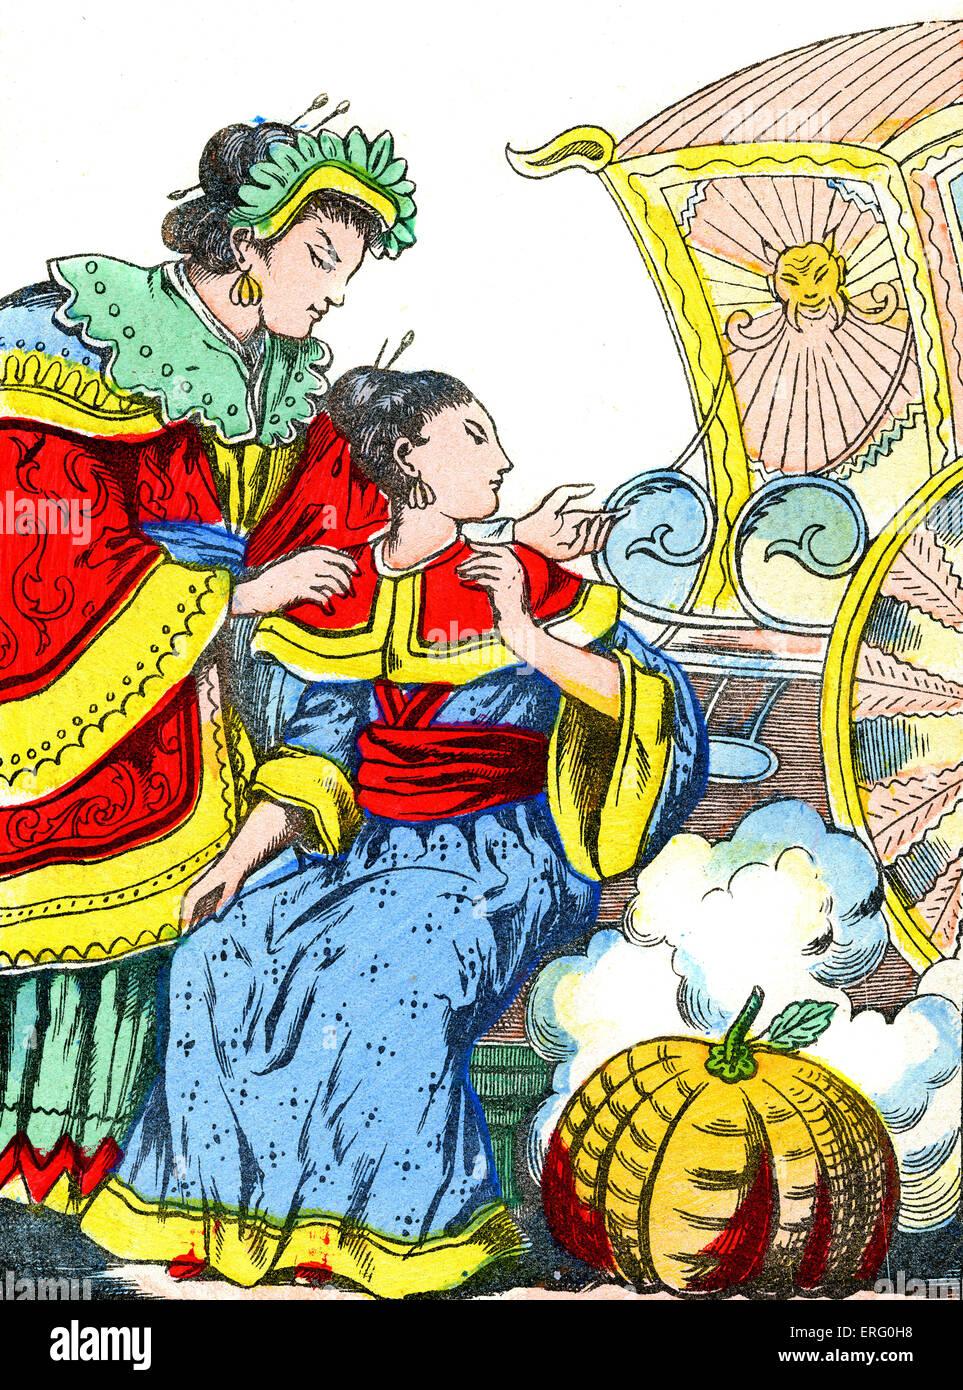 'La Cendrillon Japonaise' - La Cenerentola giapponese: Cinderella 's coach. La didascalia recita, "Le Carrosse de Cendrillon'. La fata Foto Stock